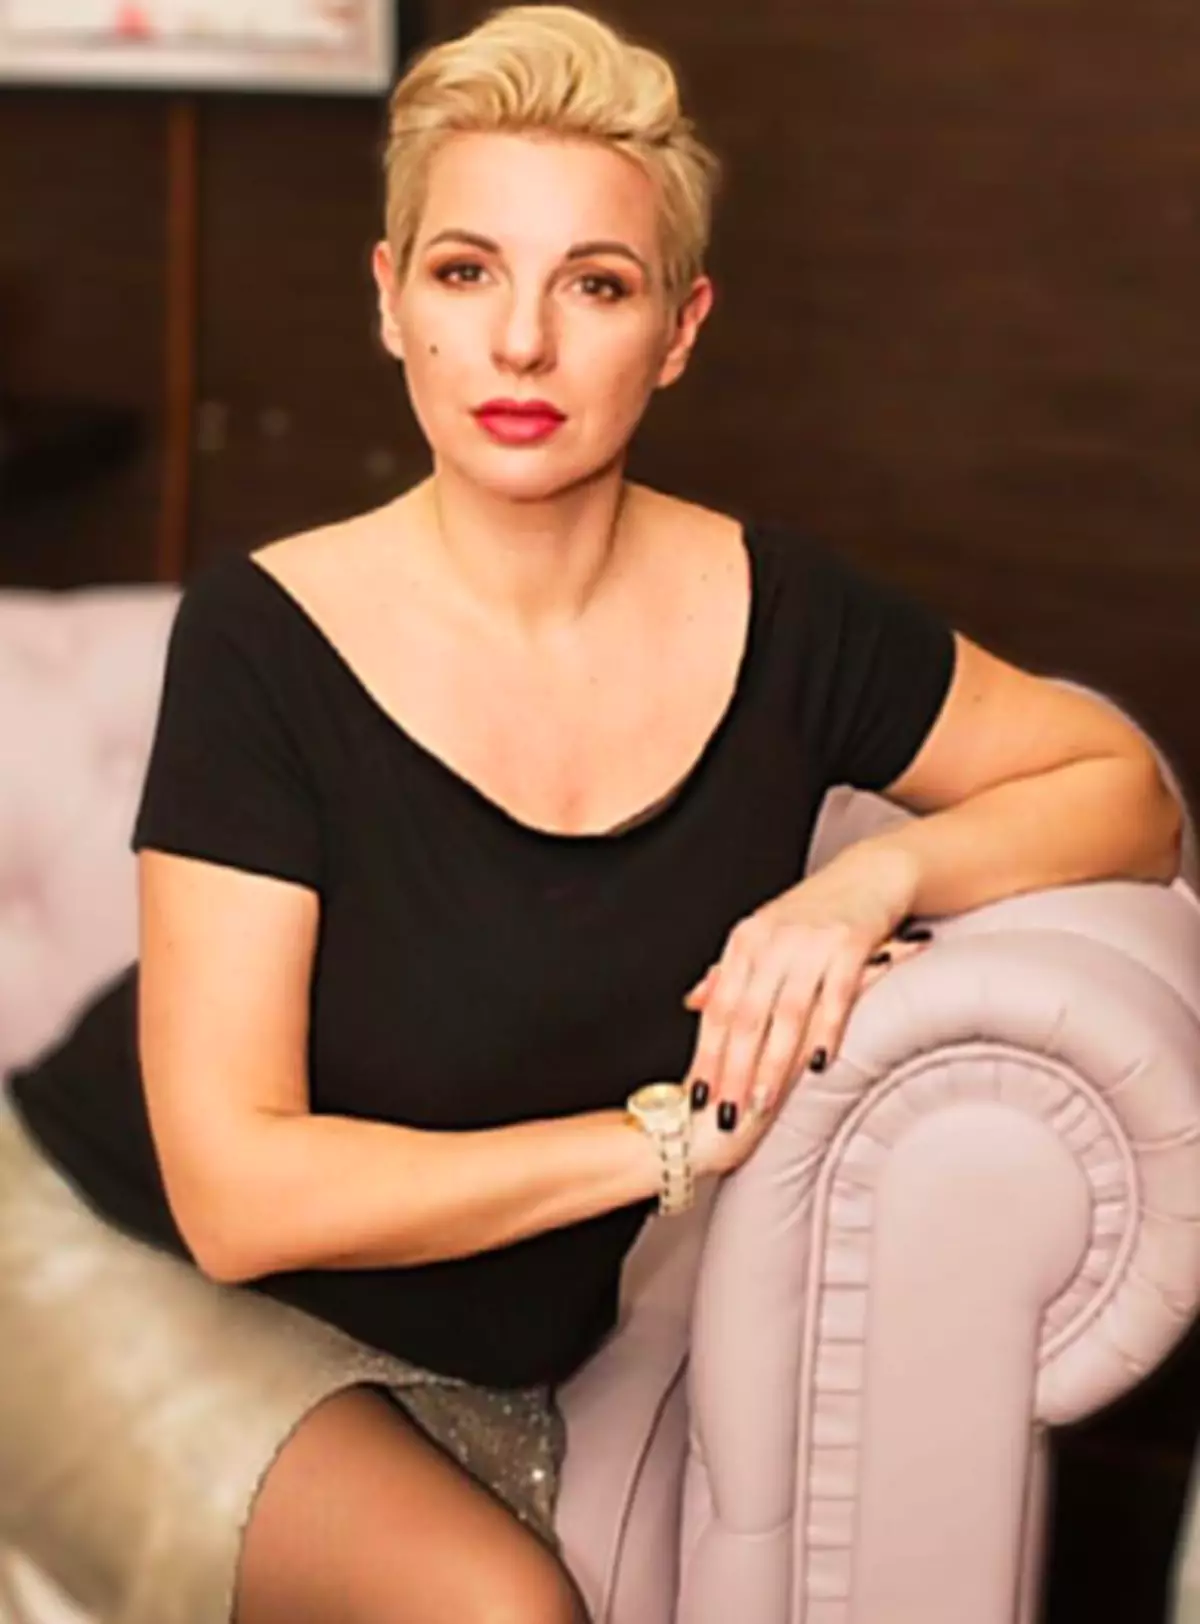 Natalia Solovyova、永久化粧品のマスター